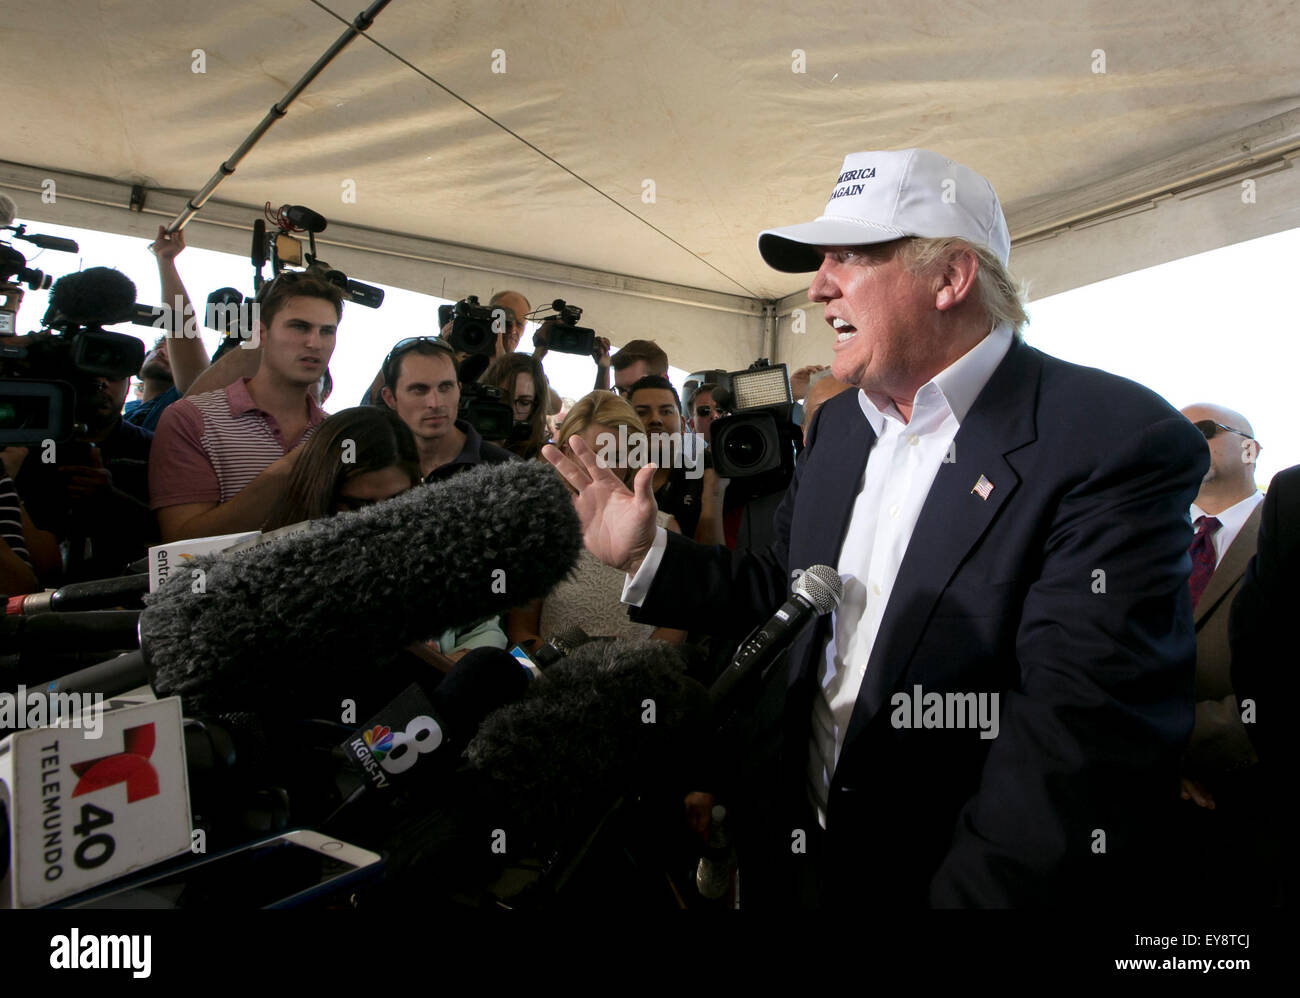 Donald Trump spricht zu den Medien im Rahmen einer Pressekonferenz auf der Grenze zwischen Texas und Mexiko in Laredo, Texas am 23. Juli 2015 Stockfoto